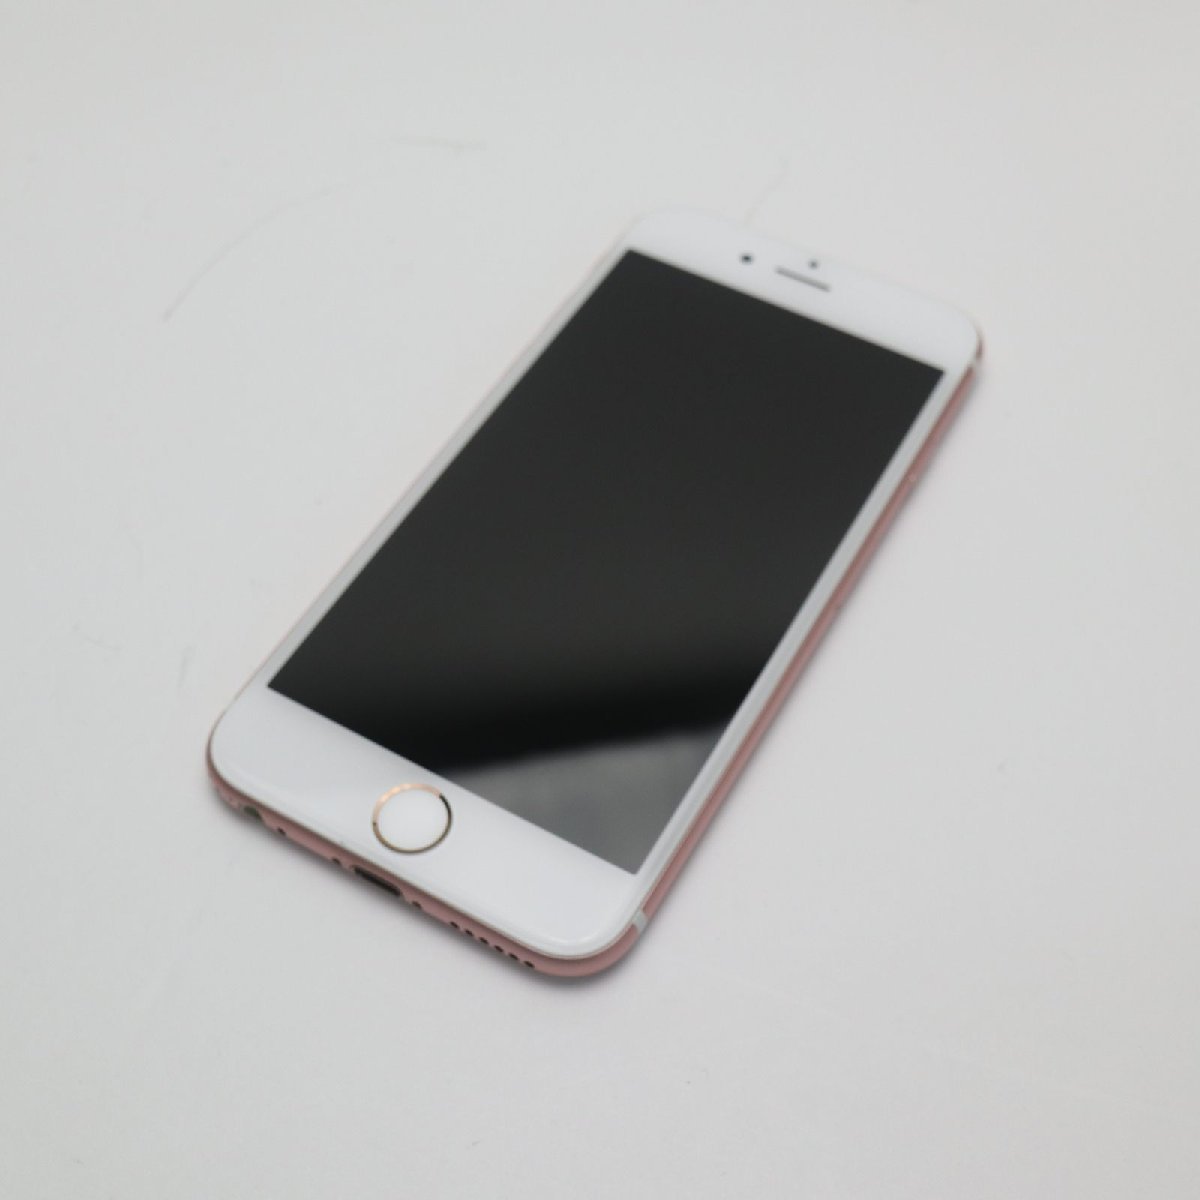 【予約販売品】 SIMフリー 超美品 iPhone6S 土日祝発送OK あすつく 中古 白ロム 本体 スマホ ローズゴールド 32GB iPhone